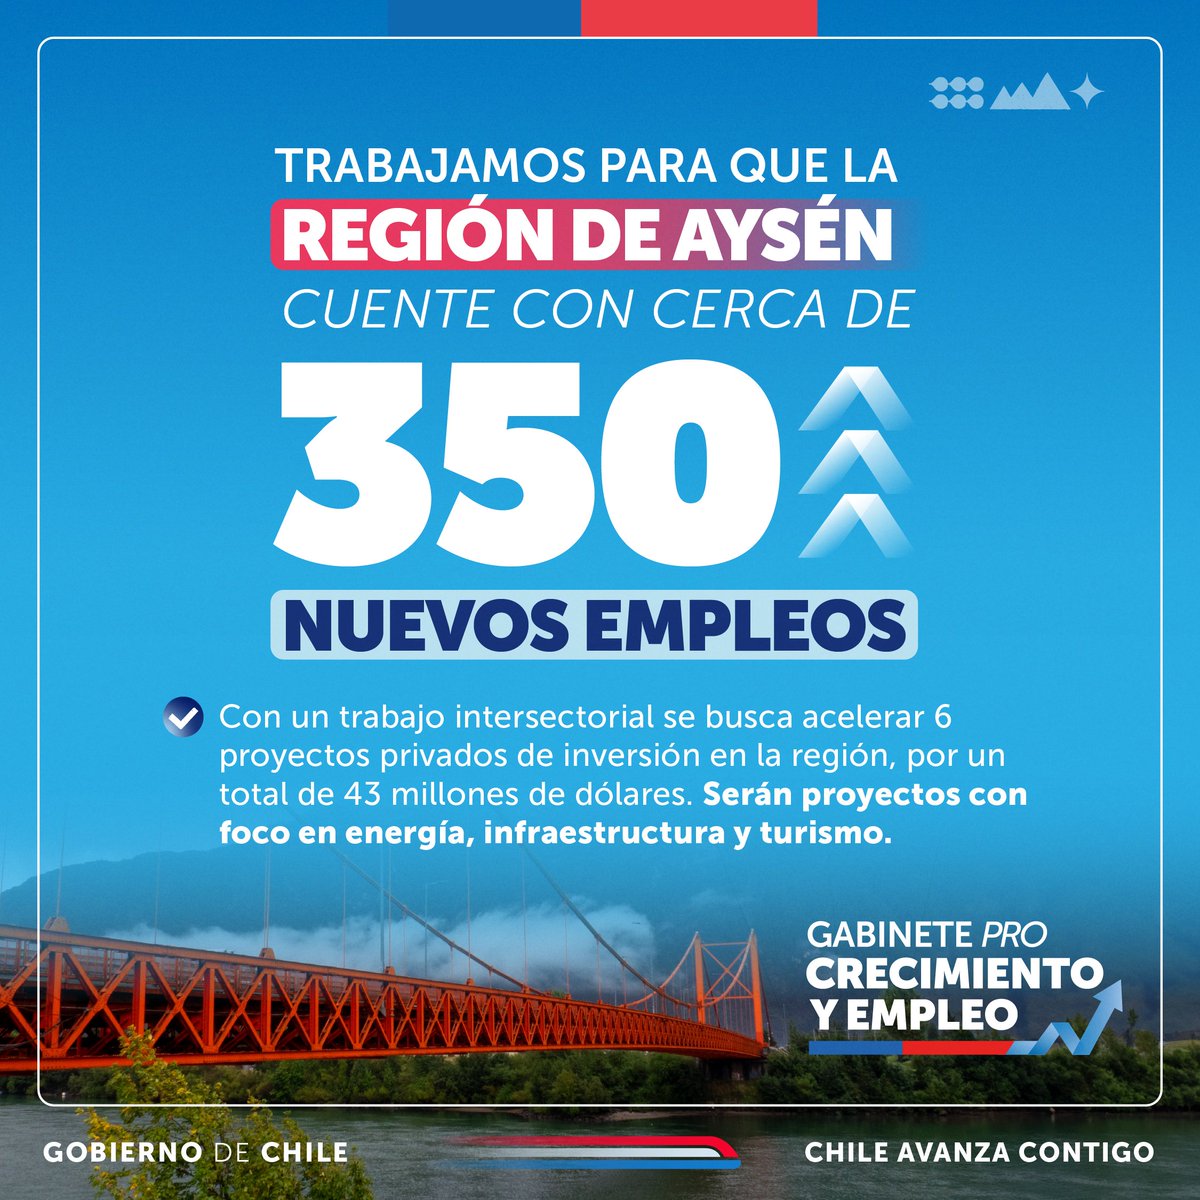 El Gabinete #ProCrecimientoyEmpleo continúa su trabajo por más inversión para nuestras regiones 🇨🇱 En la sesión de hoy, en la Región de Aysén, buscamos acelerar colaboraciones público-privadas en energía, infraestructura y turismo, que promuevan la creación de más empleos.